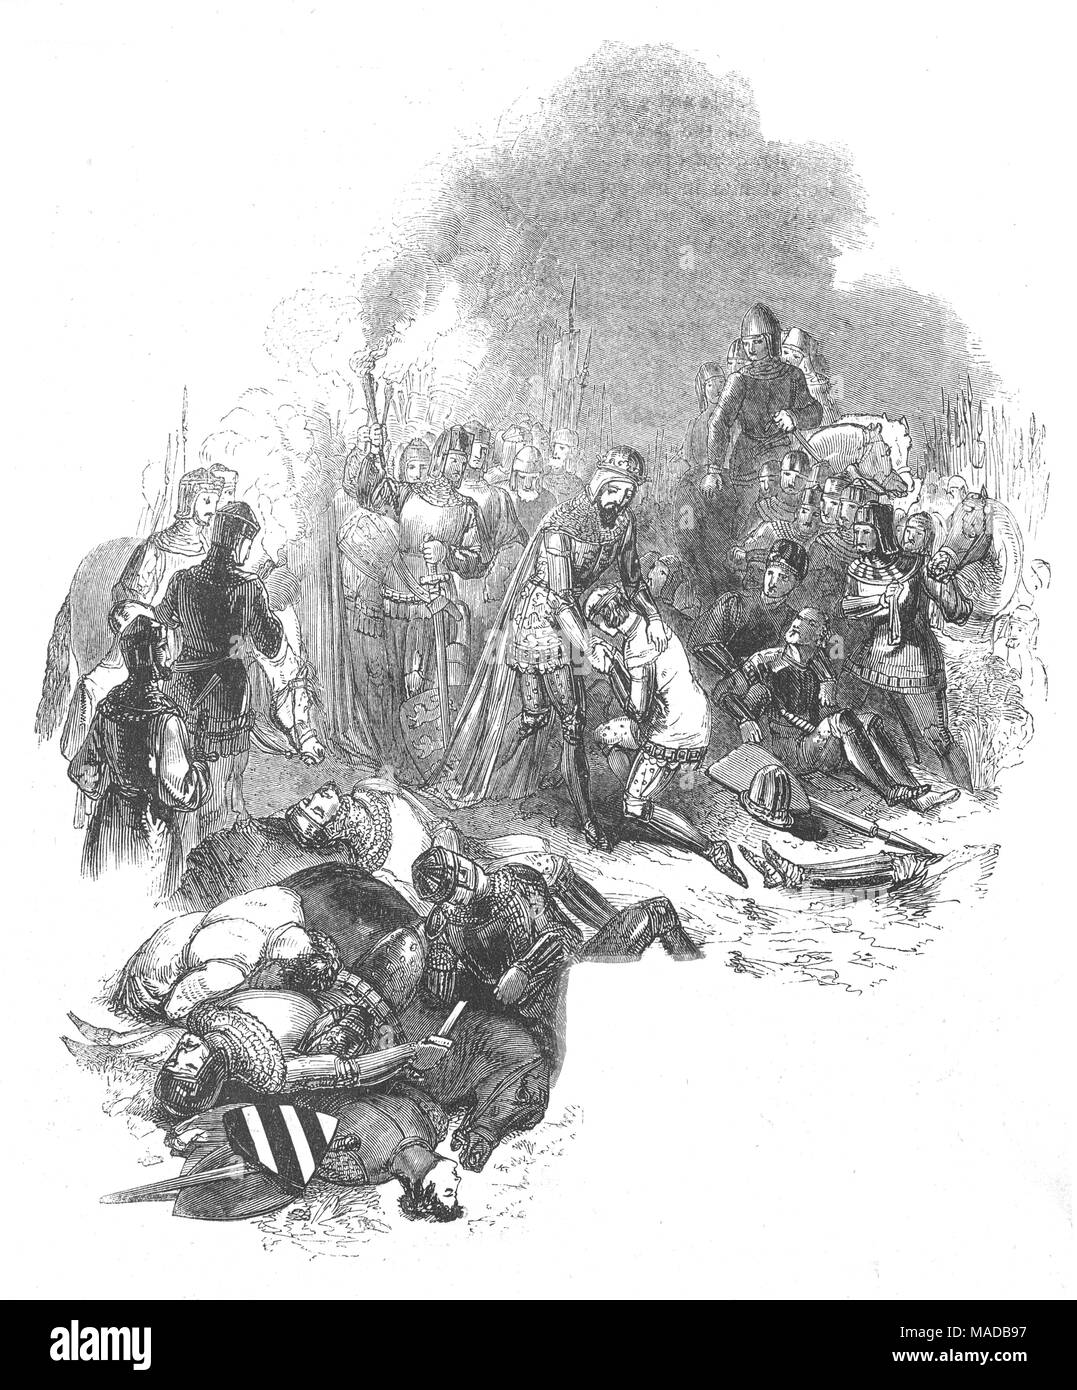 La bataille de Crécy aka, la bataille de Cressy, eut lieu le 26 août 1346 près de Crécy, dans le nord de la France. C'était une victoire anglaise pendant la phase d'Edwardian la Guerre de Cent ans lorsqu'une armée de l'anglais, gallois, et des troupes de mercenaires dirigée par Édouard III d'Angleterre, engagés et défait une armée beaucoup plus grande du français, génois et troupes de Majorque dirigé par Philippe VI de France. Avec le plus important de Poitiers en 1356, et d'Azincourt en 1415, il a été le premier des trois succès anglais célèbre pendant le conflit. Banque D'Images